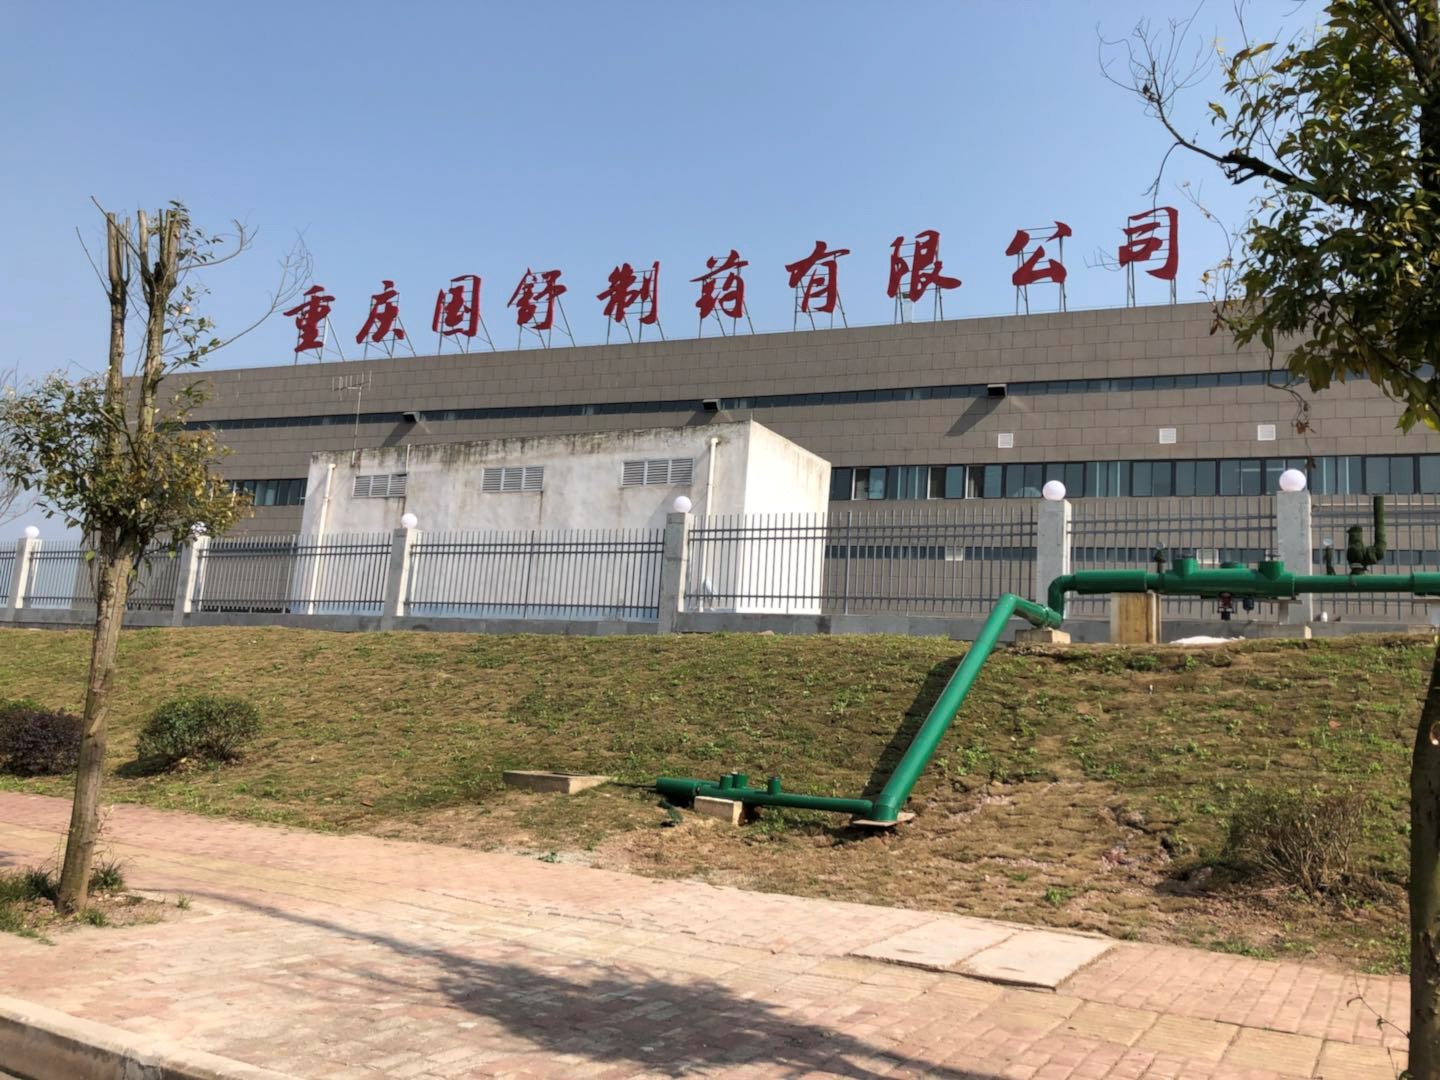 重慶國舒制藥有限公司伍舒芳特色醫藥制劑產業化生產基地（一階段）